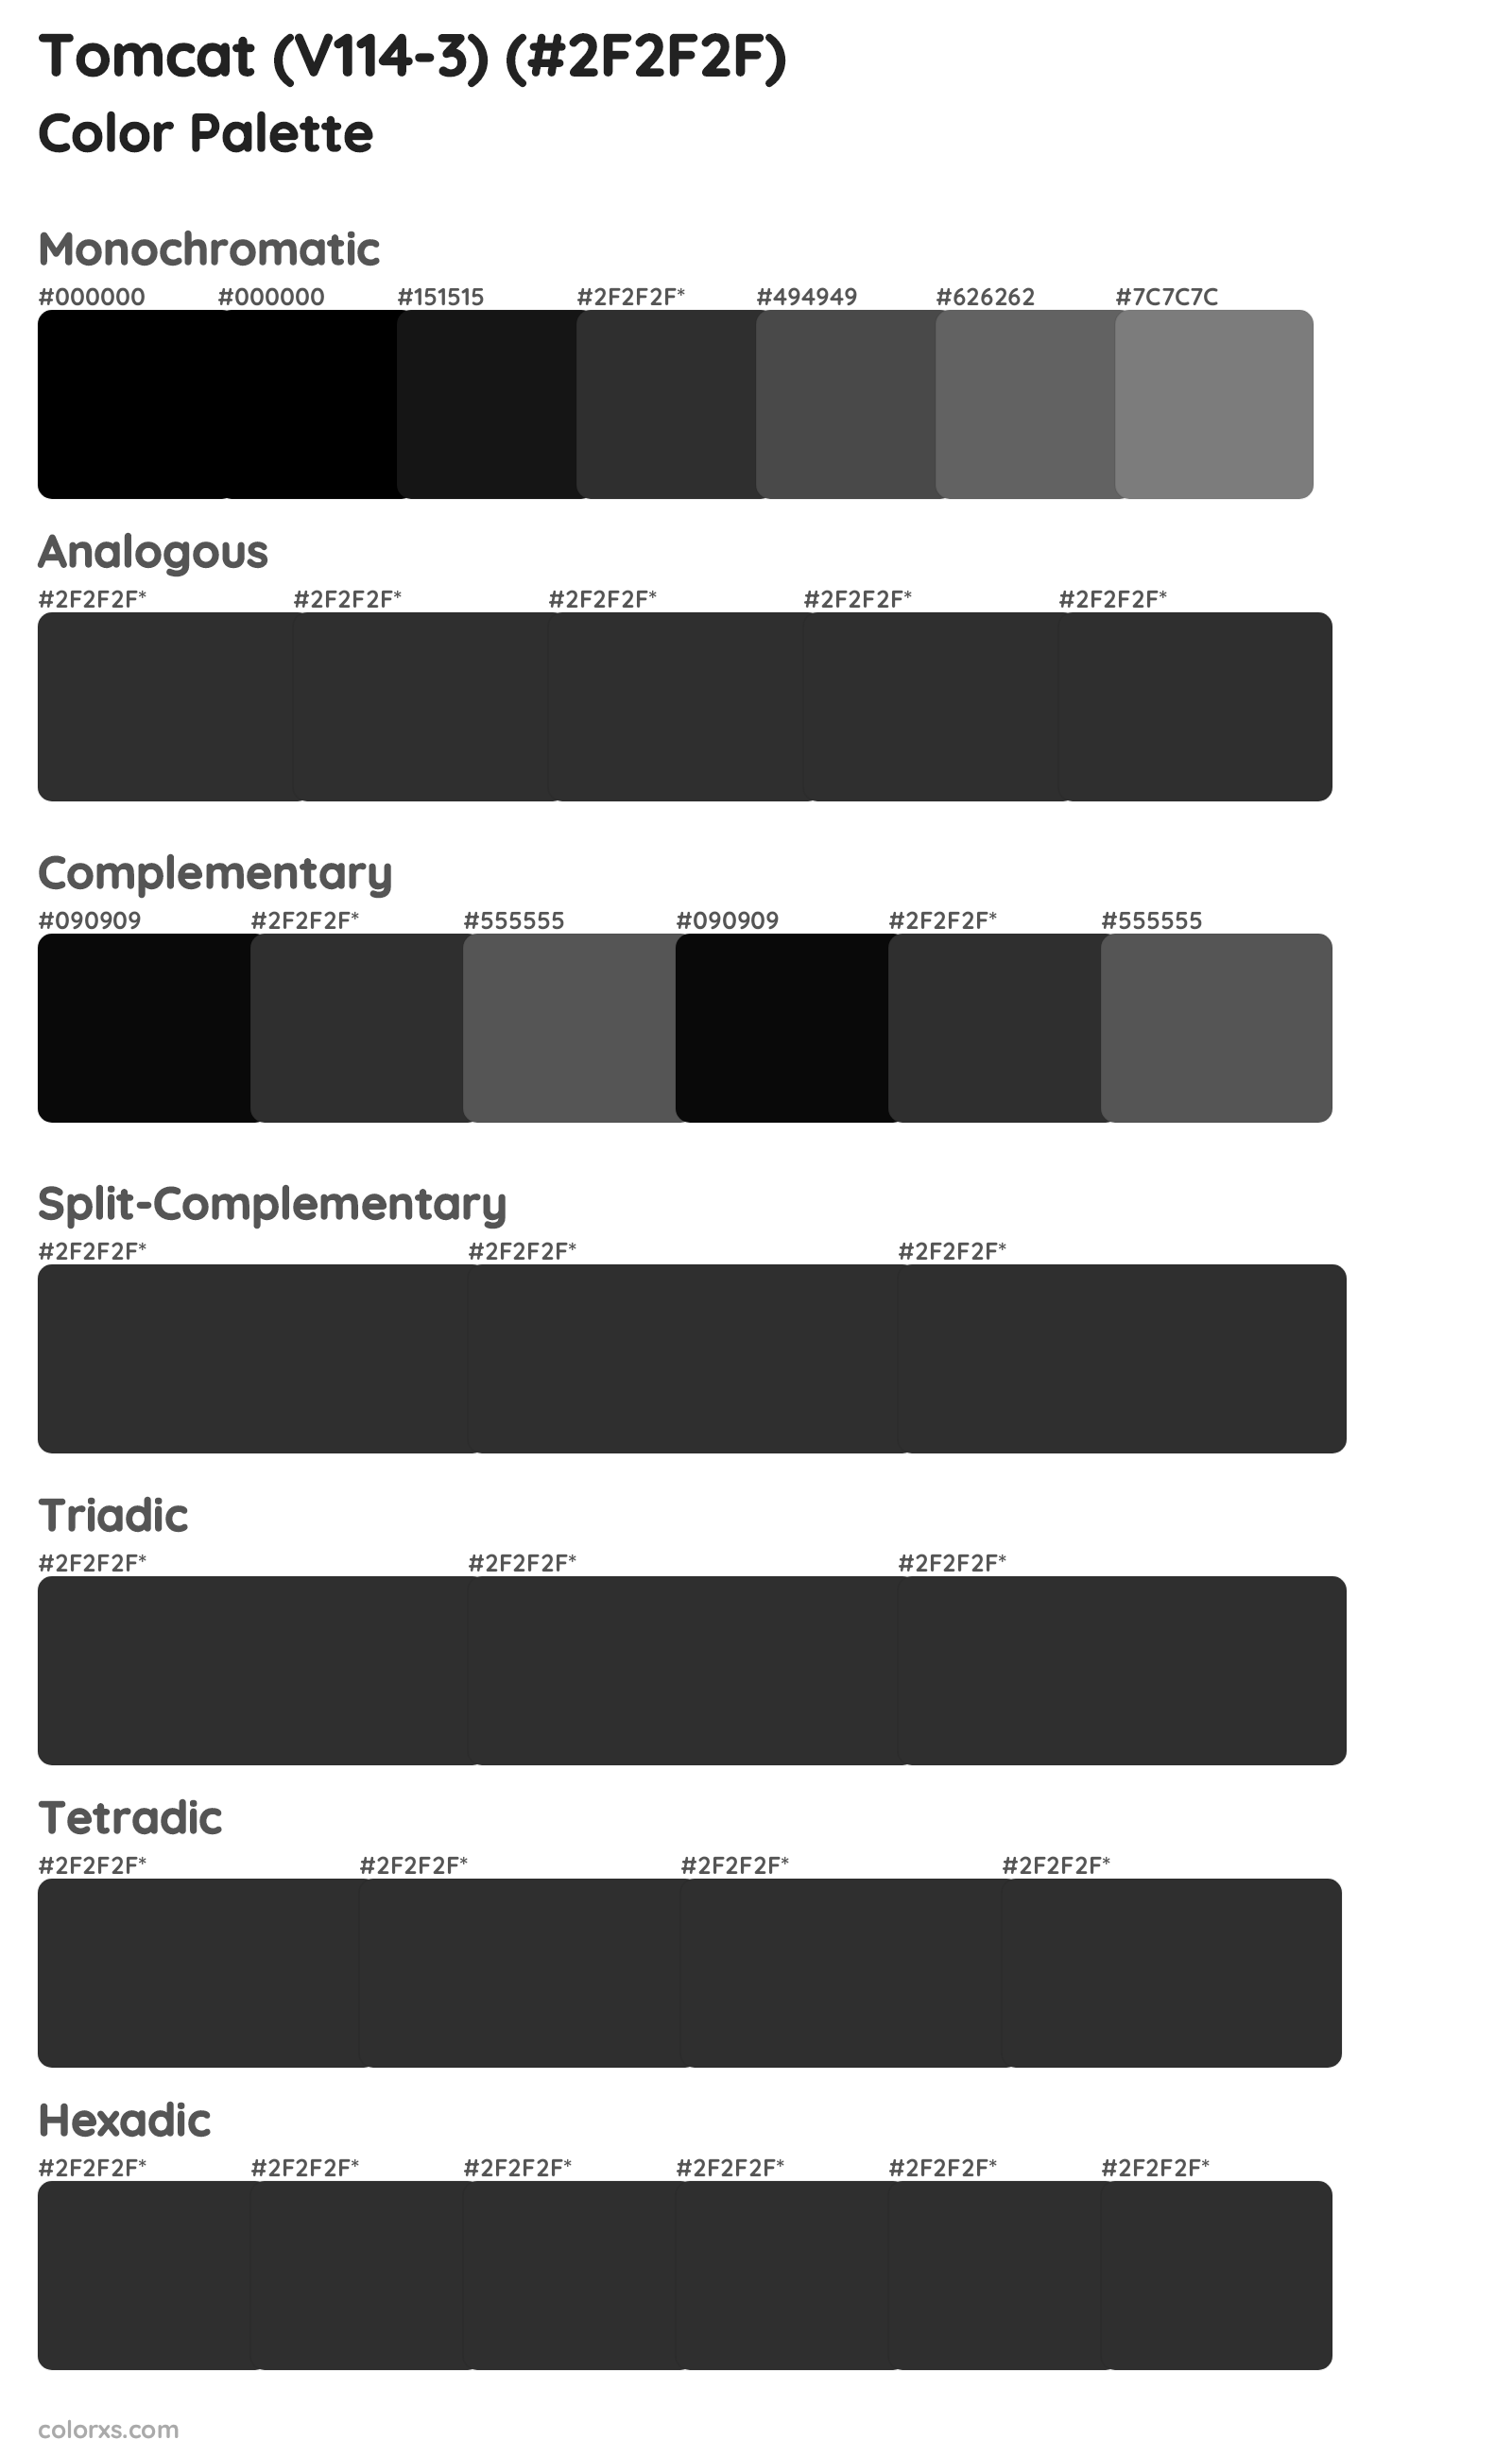 Tomcat (V114-3) Color Scheme Palettes